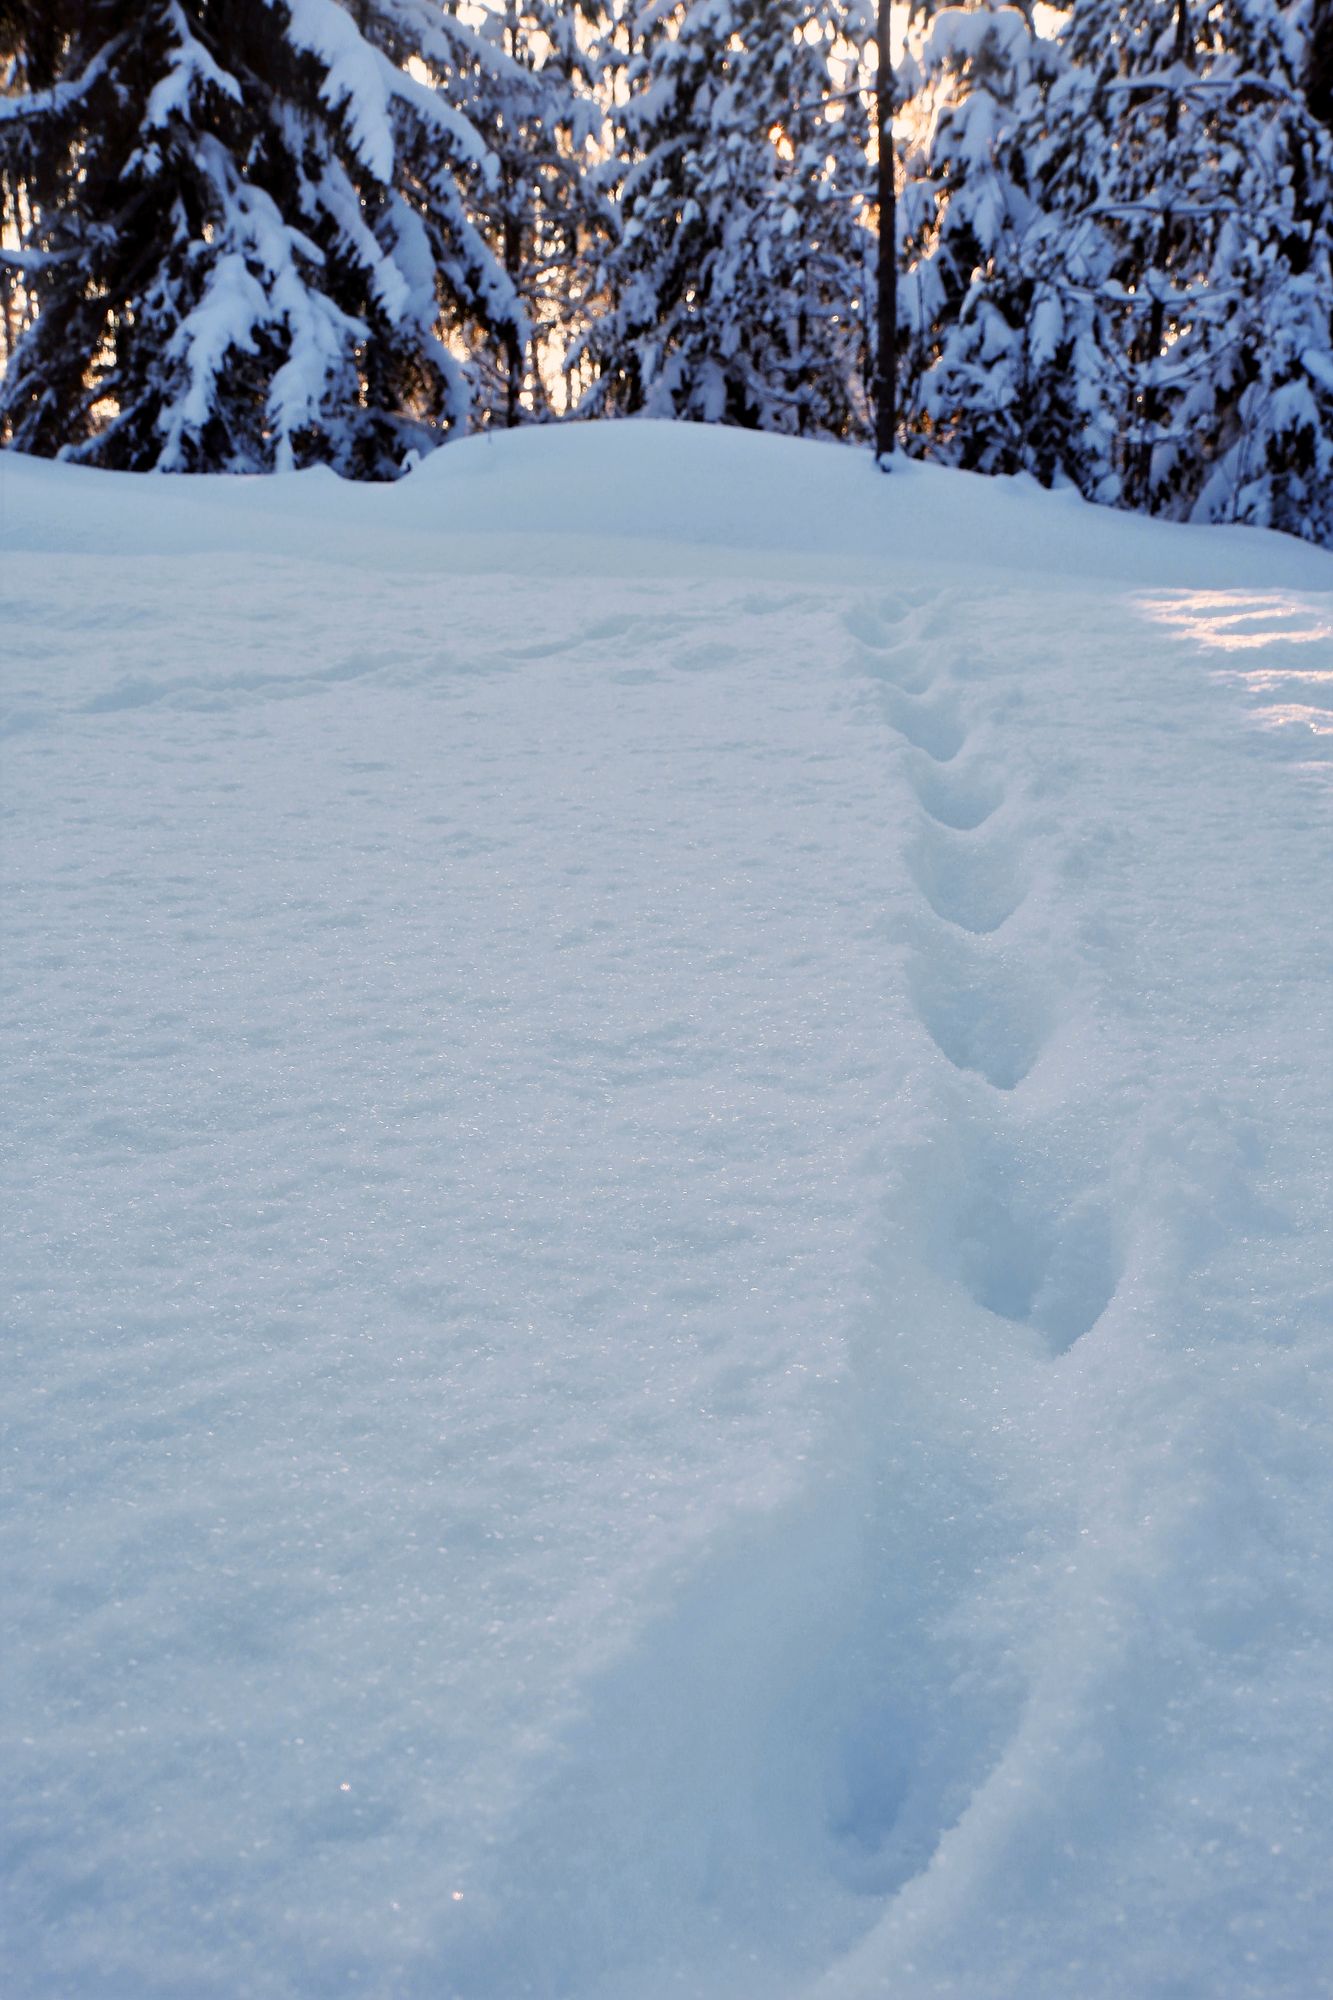 Näädän voi tavata kaikkialla Suomessa siellä missä kasvaa havumetsiä. Otuksesta näkee usein vain yölliset lumijäljet, sillä päivisin se piilottelee koloissa ja oravanpesissä. © Jere Malinen